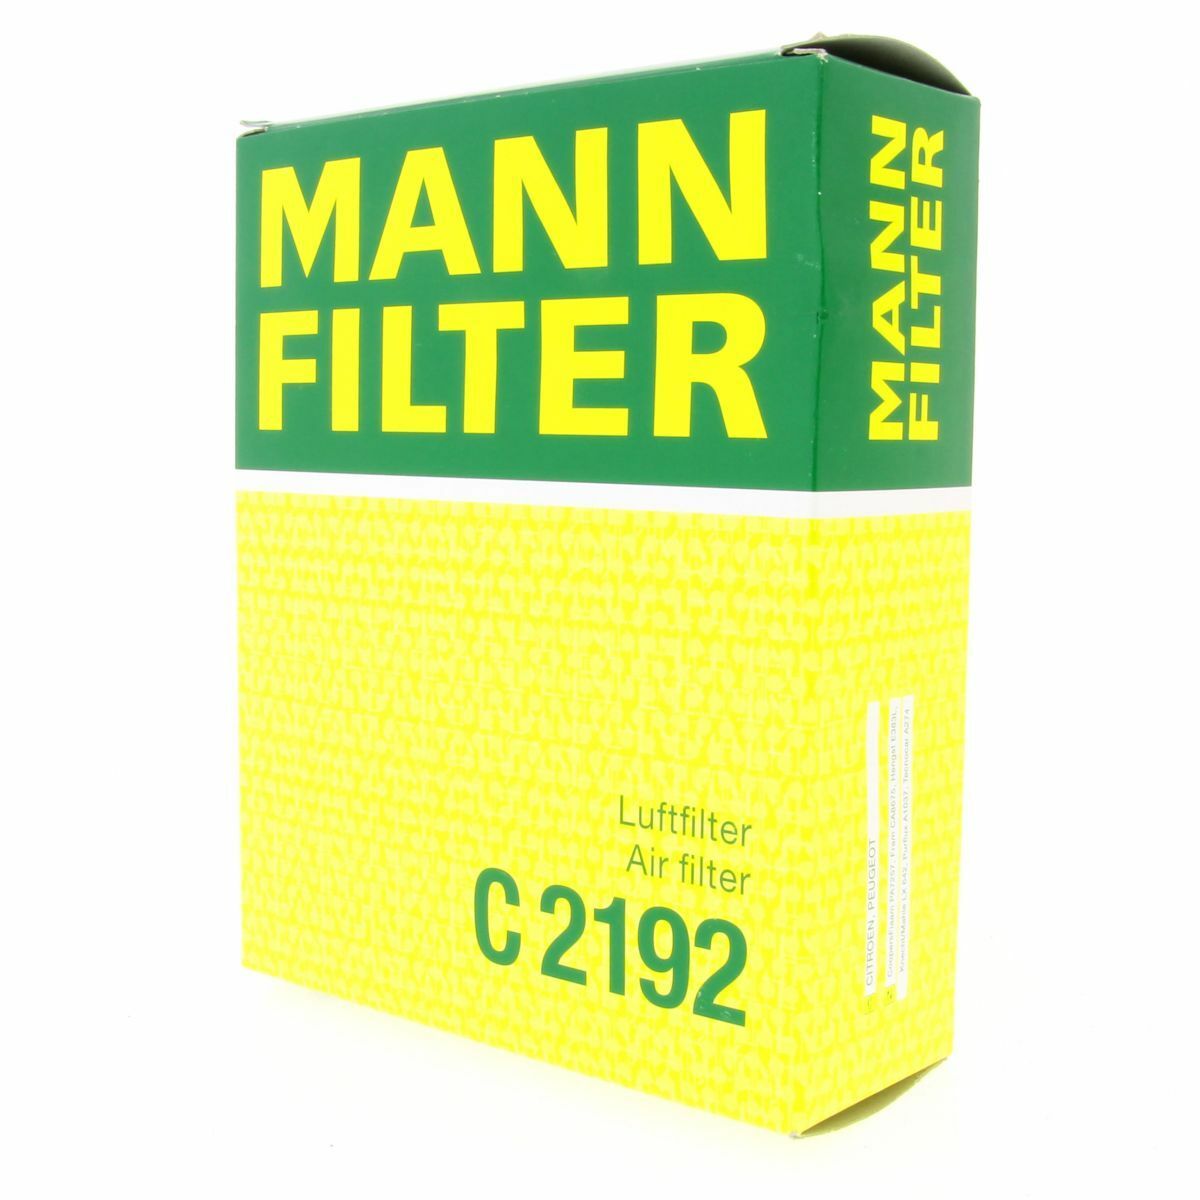 MANN Luftfilter C2192 Filter Citroen Xsara N1 Peugeot 206 CC 2D